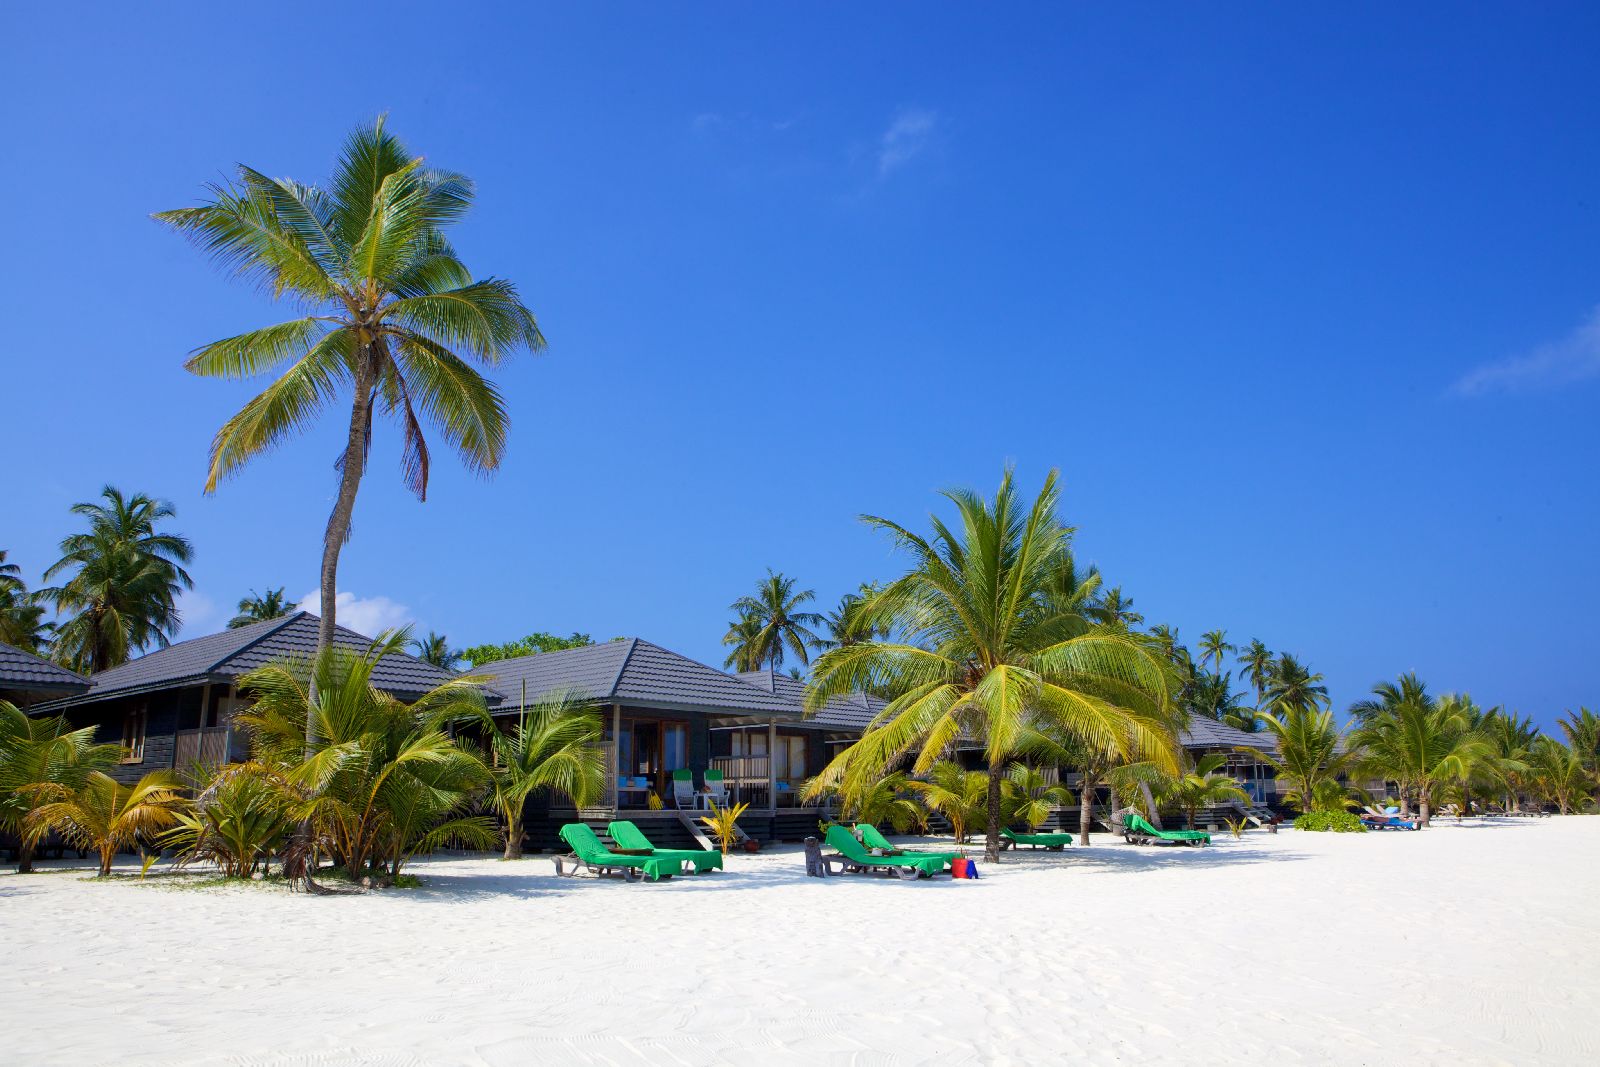 The beach villas at Kuredu Resort and Spa Maldives